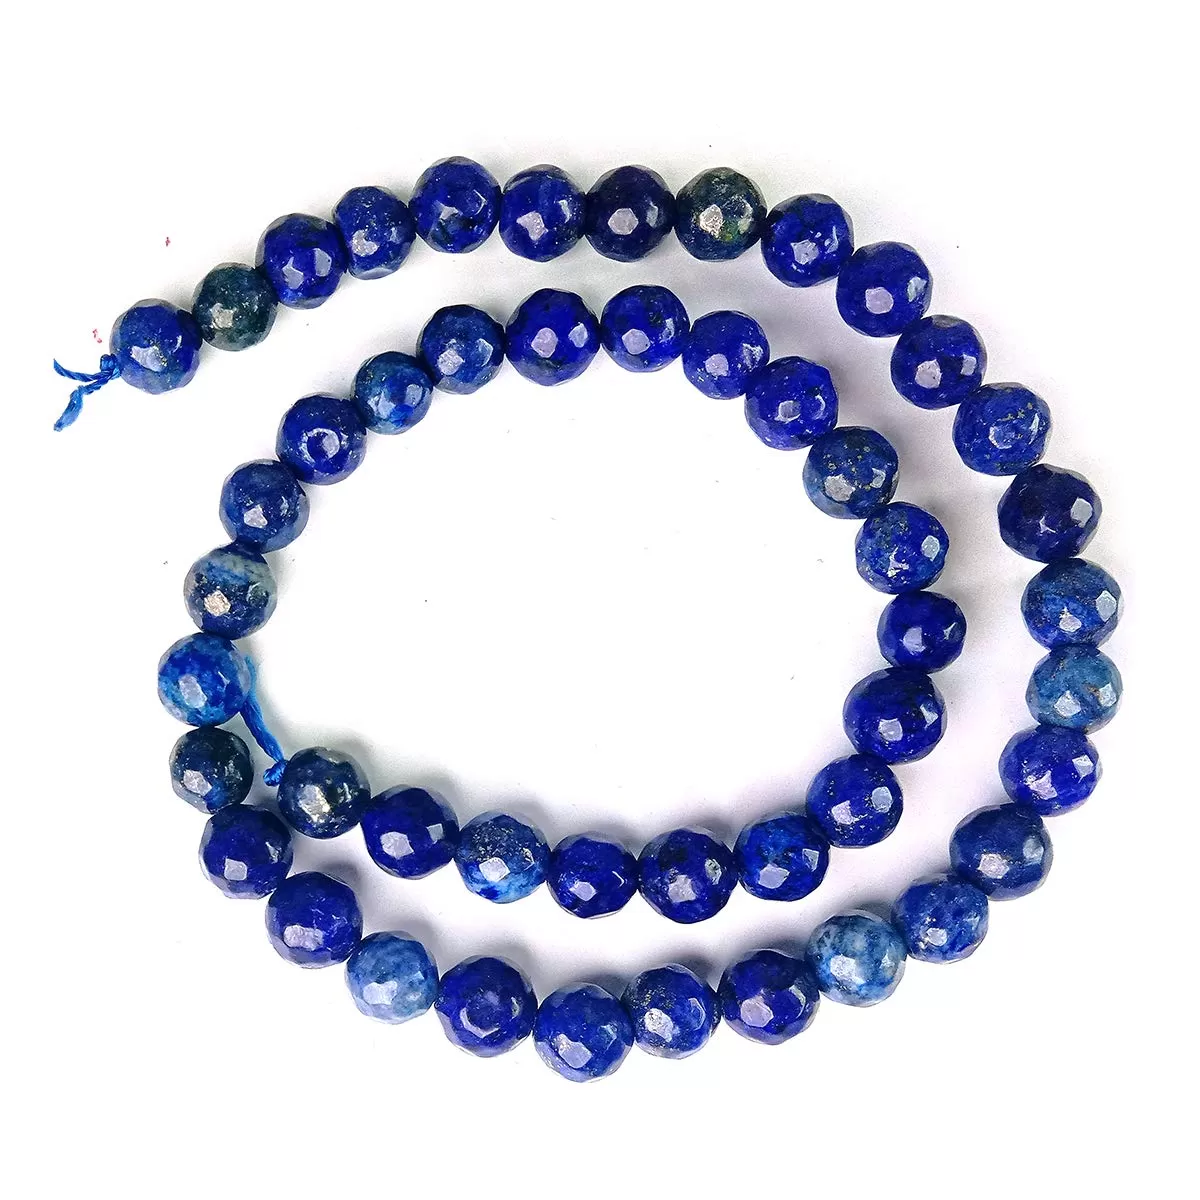 Lapis Lazuli Loose Beads Diamond Cut 8 mm Stone Beads for Jewellery Making Bracelet Beads Mala Beads Crystal Beads for Jewellery Making Necklace/Bracelet/Mala